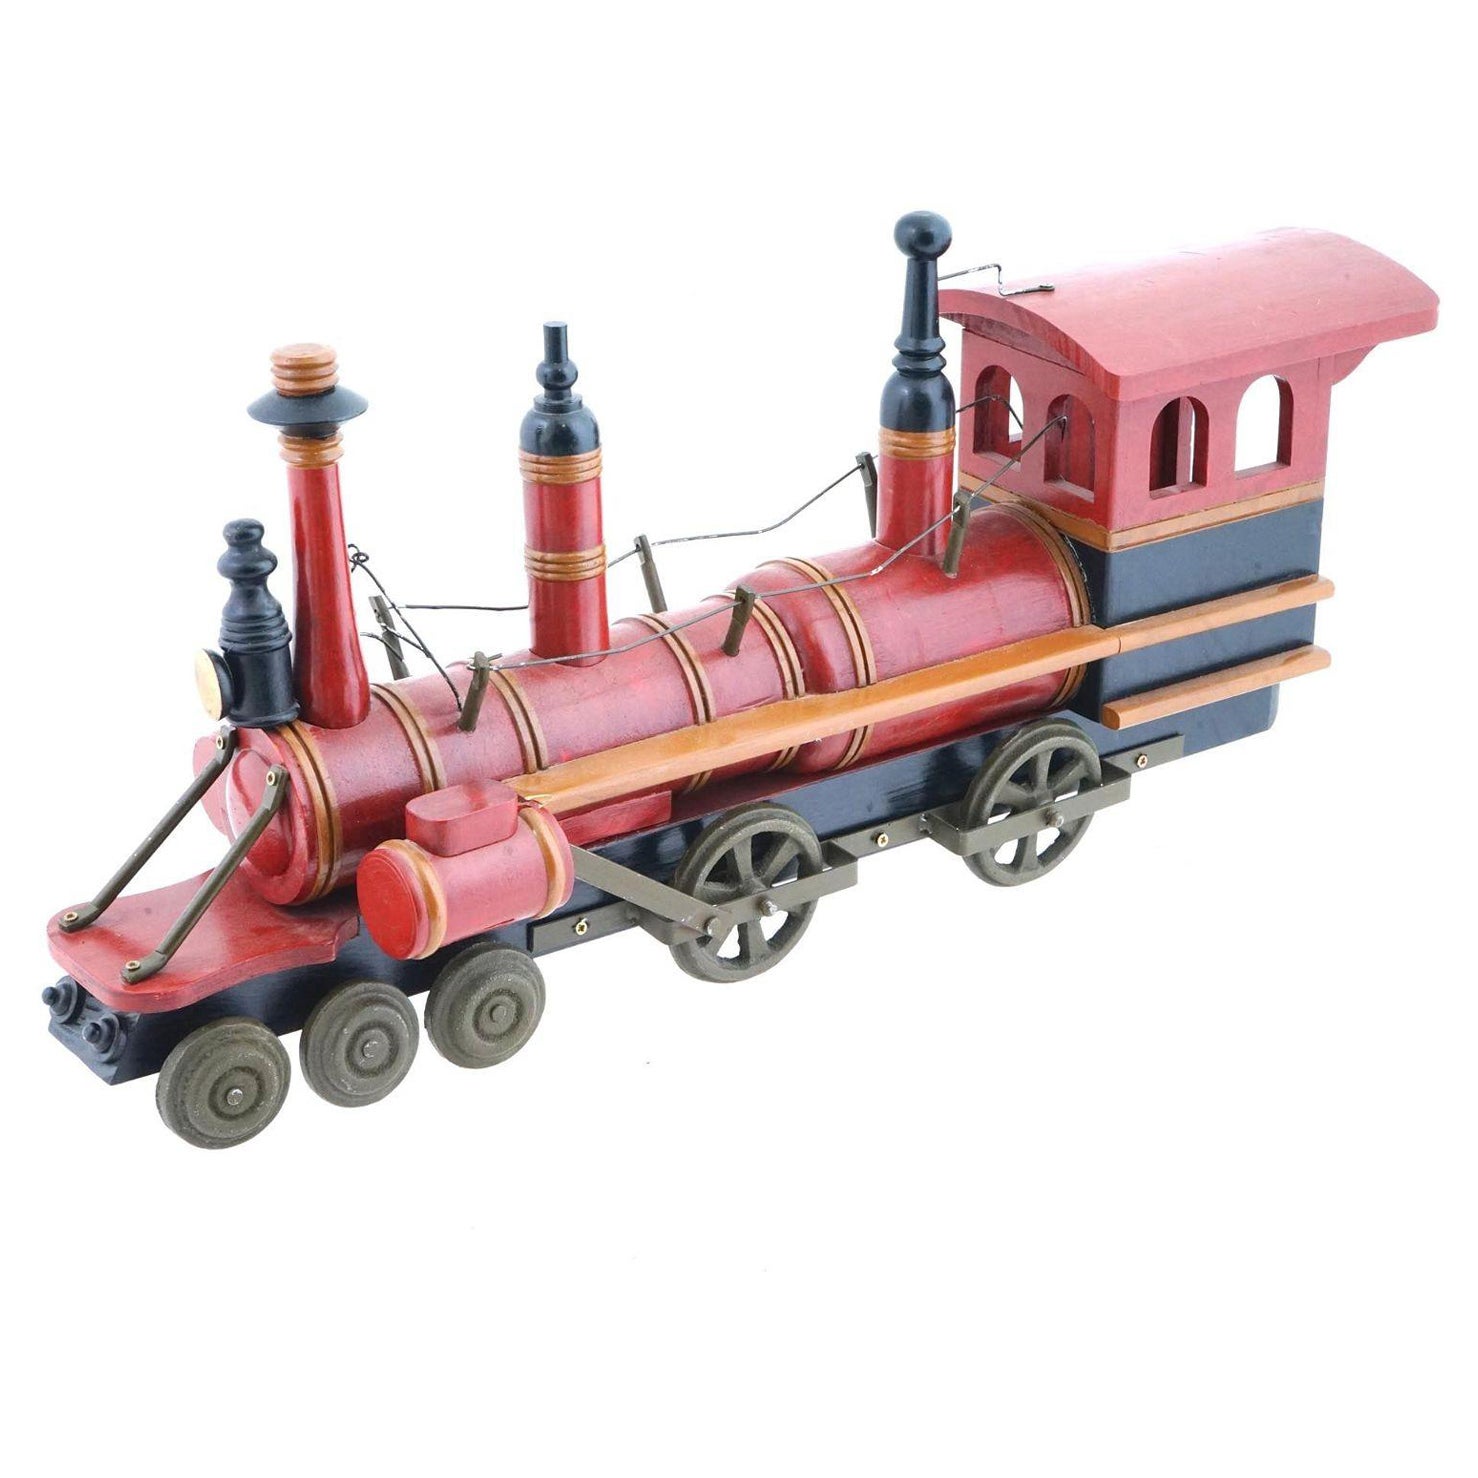 Large Vintage Locomotive Train Engine Toy For Sale